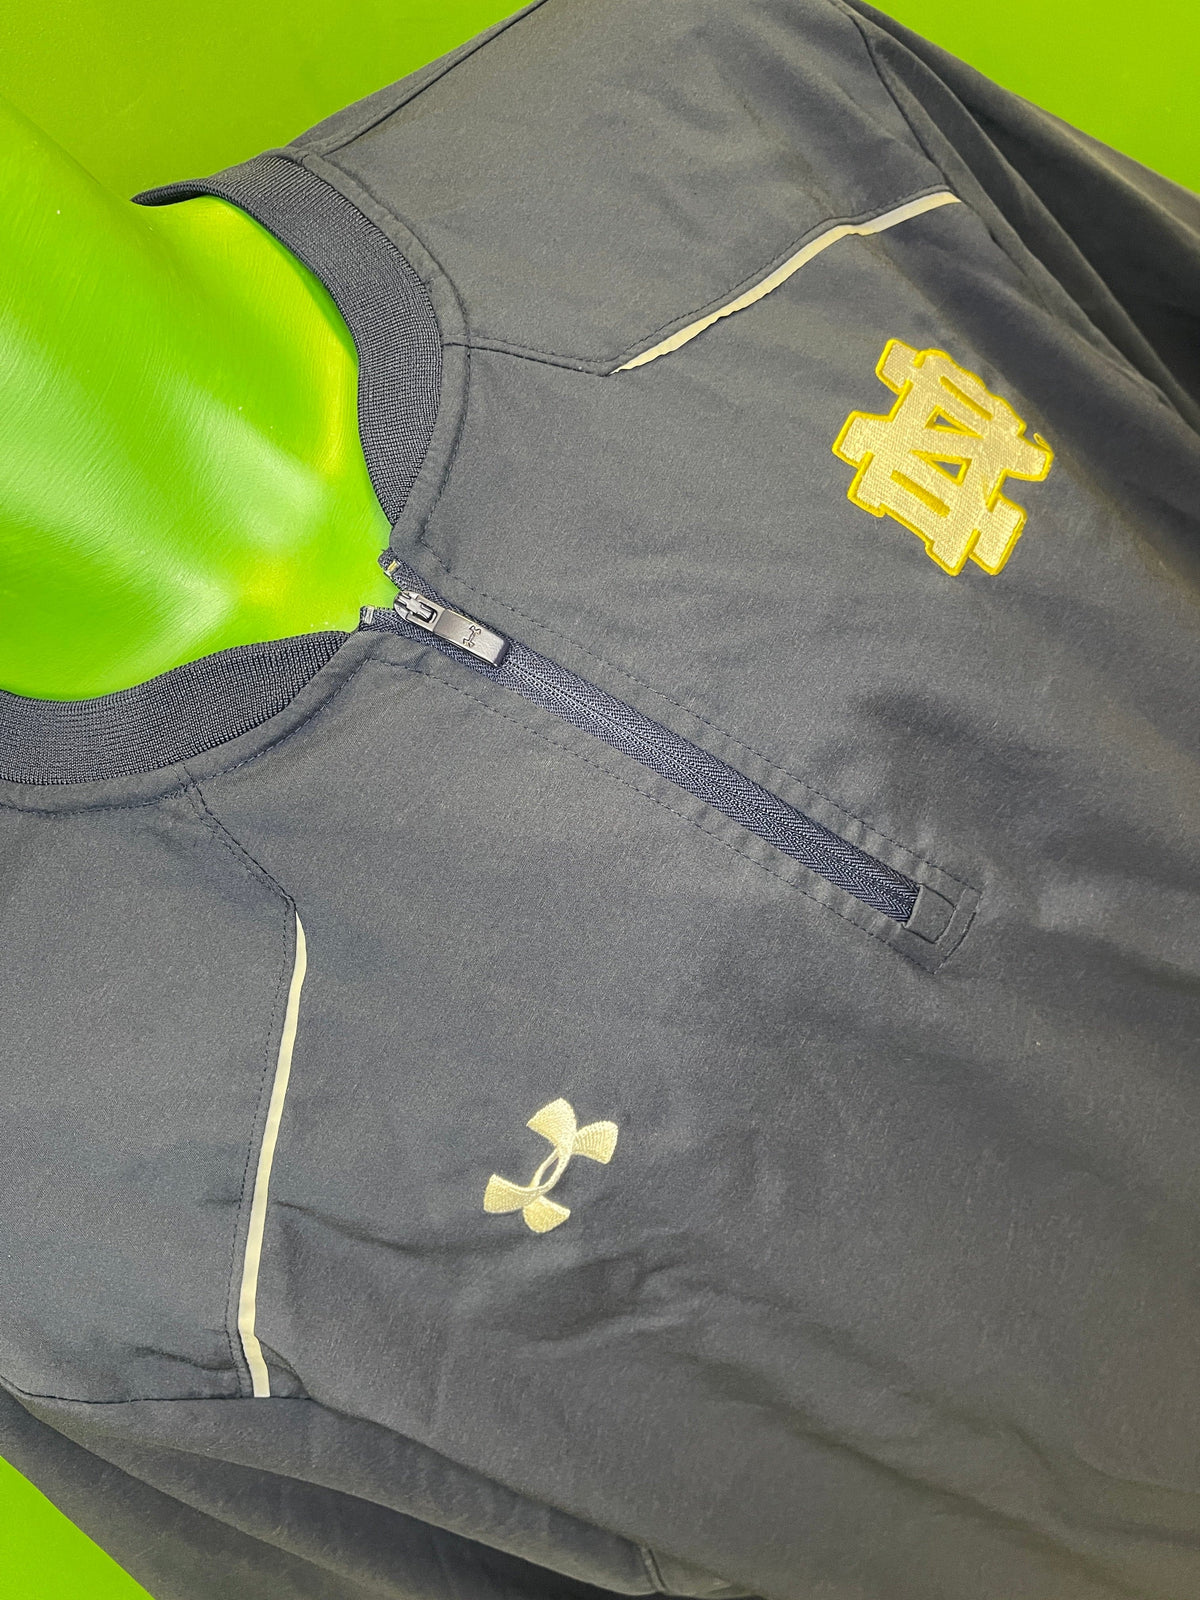 NCAA Notre Dame Fighting Irish 1/4 Zip Pullover Top Jacket Men's X-Large